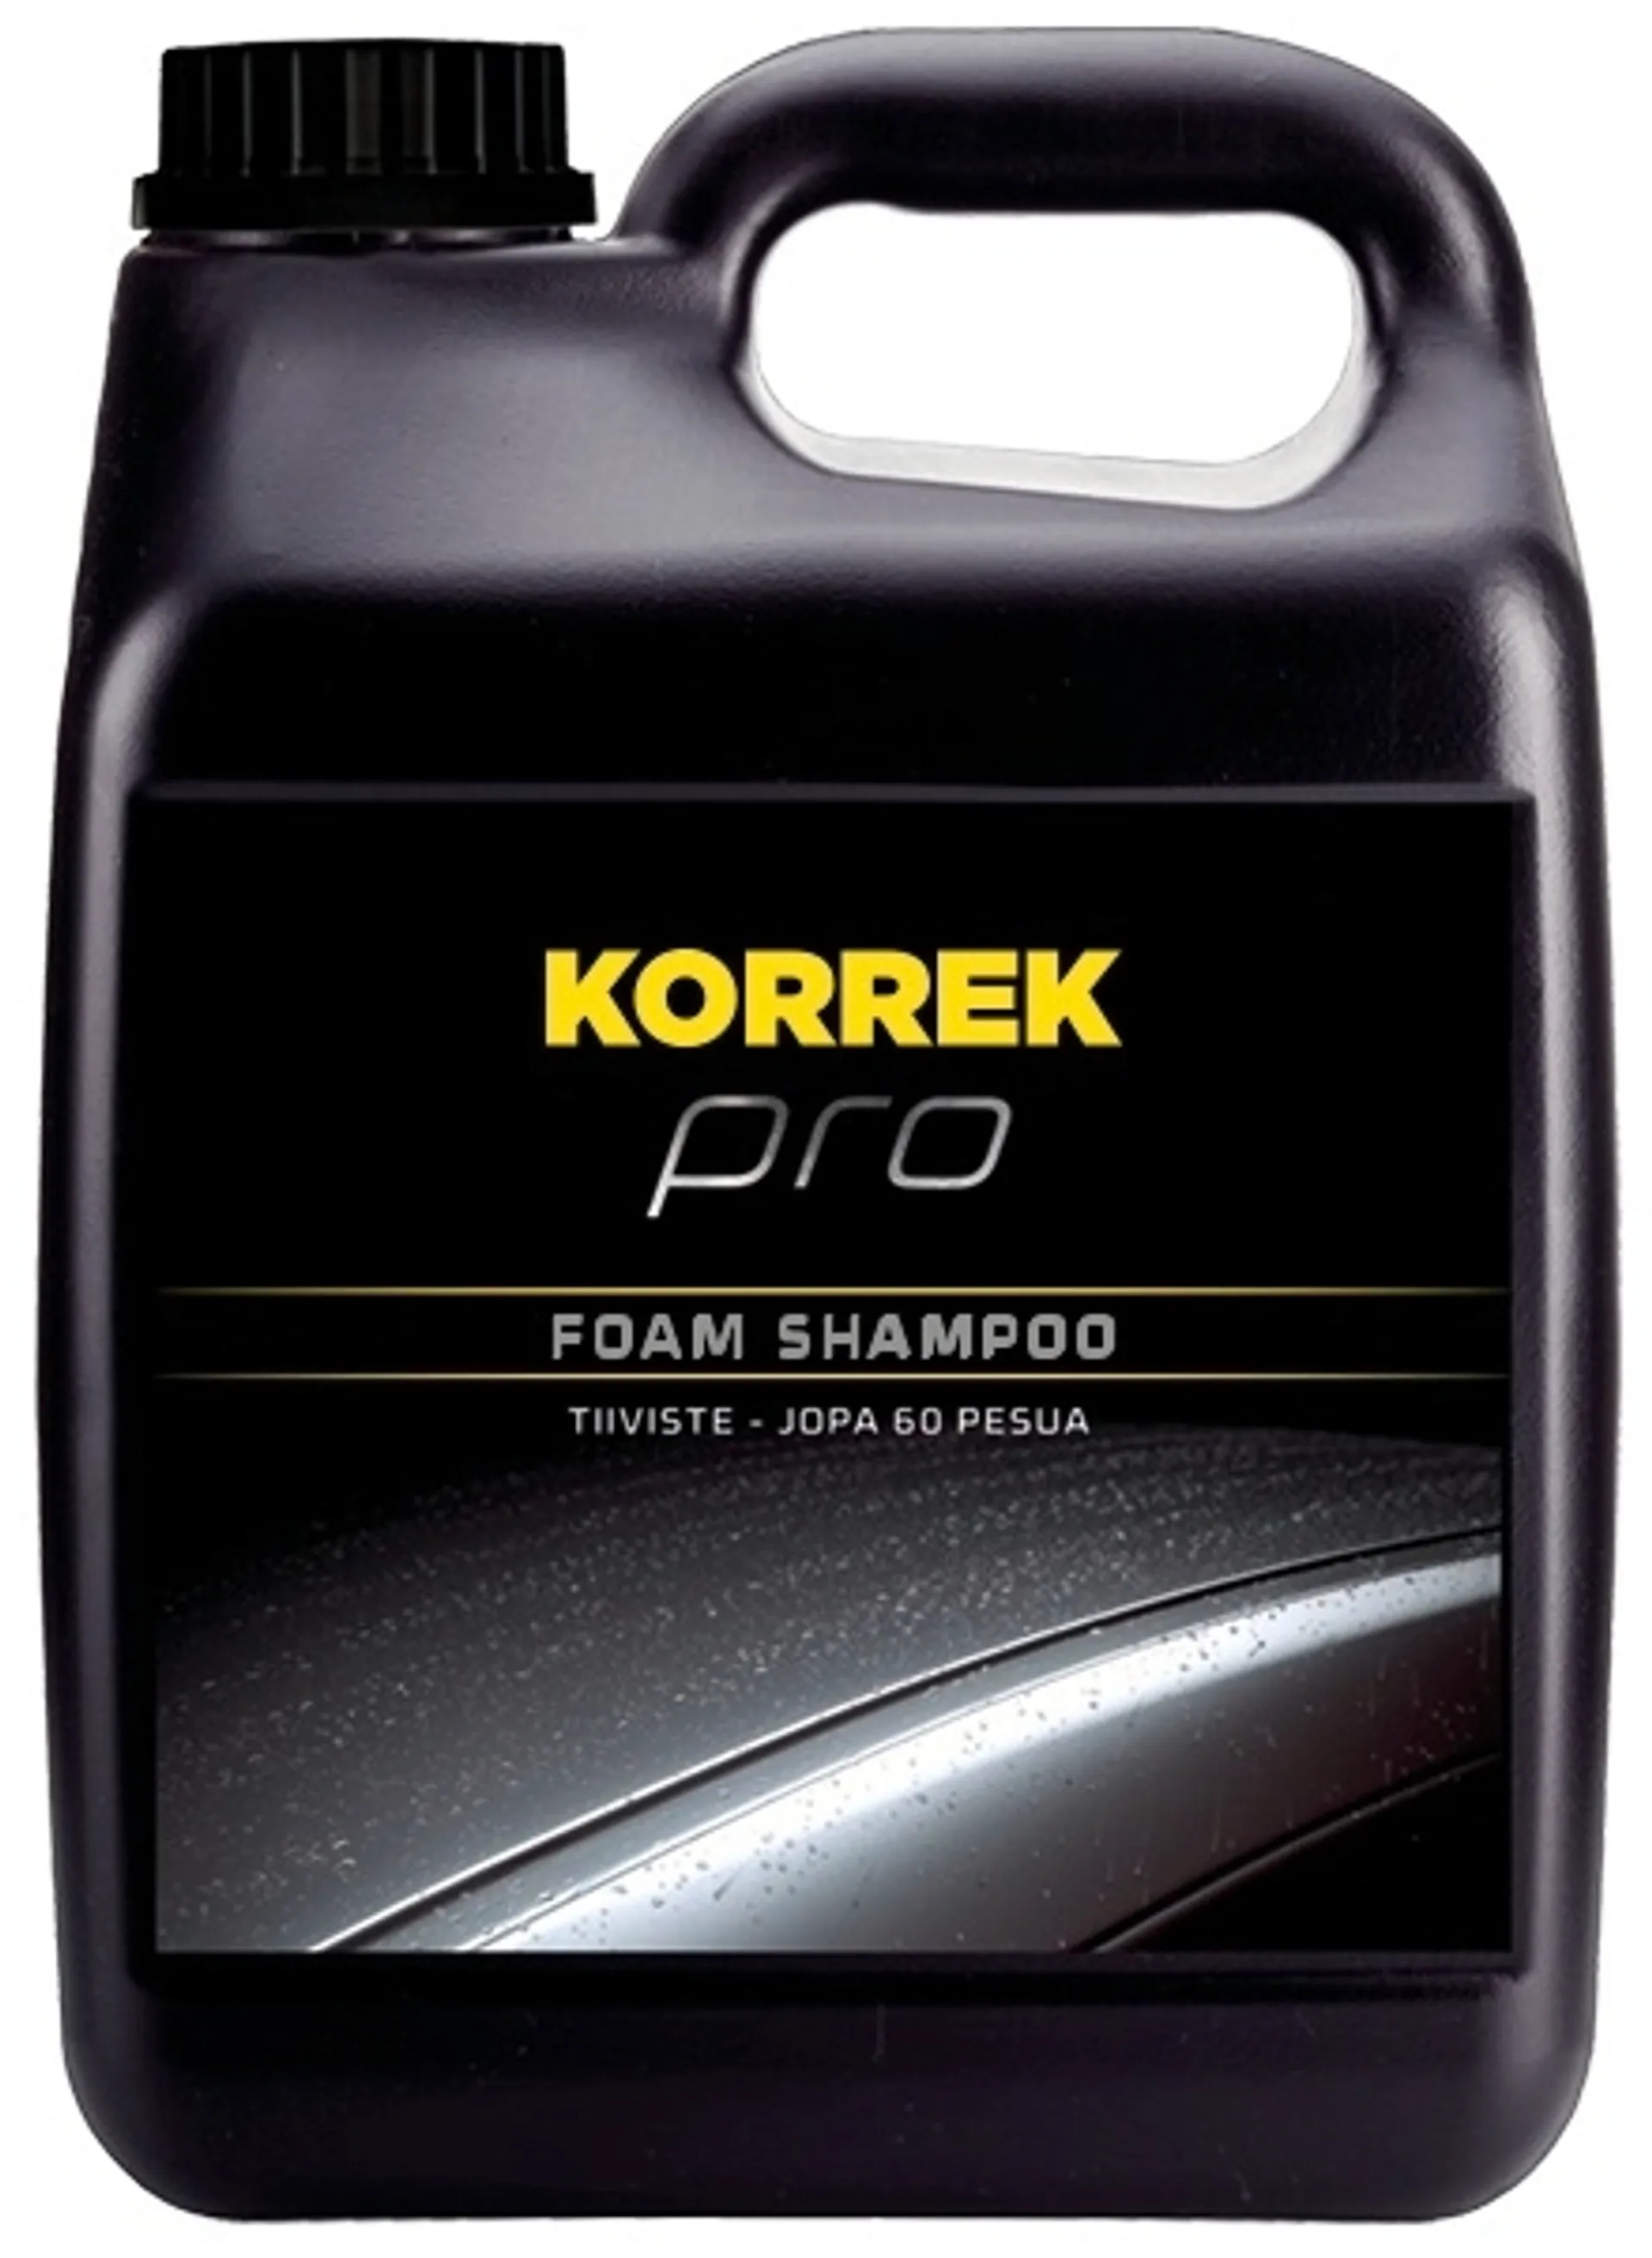 KORREK Pro Foam Shampoo 3 L